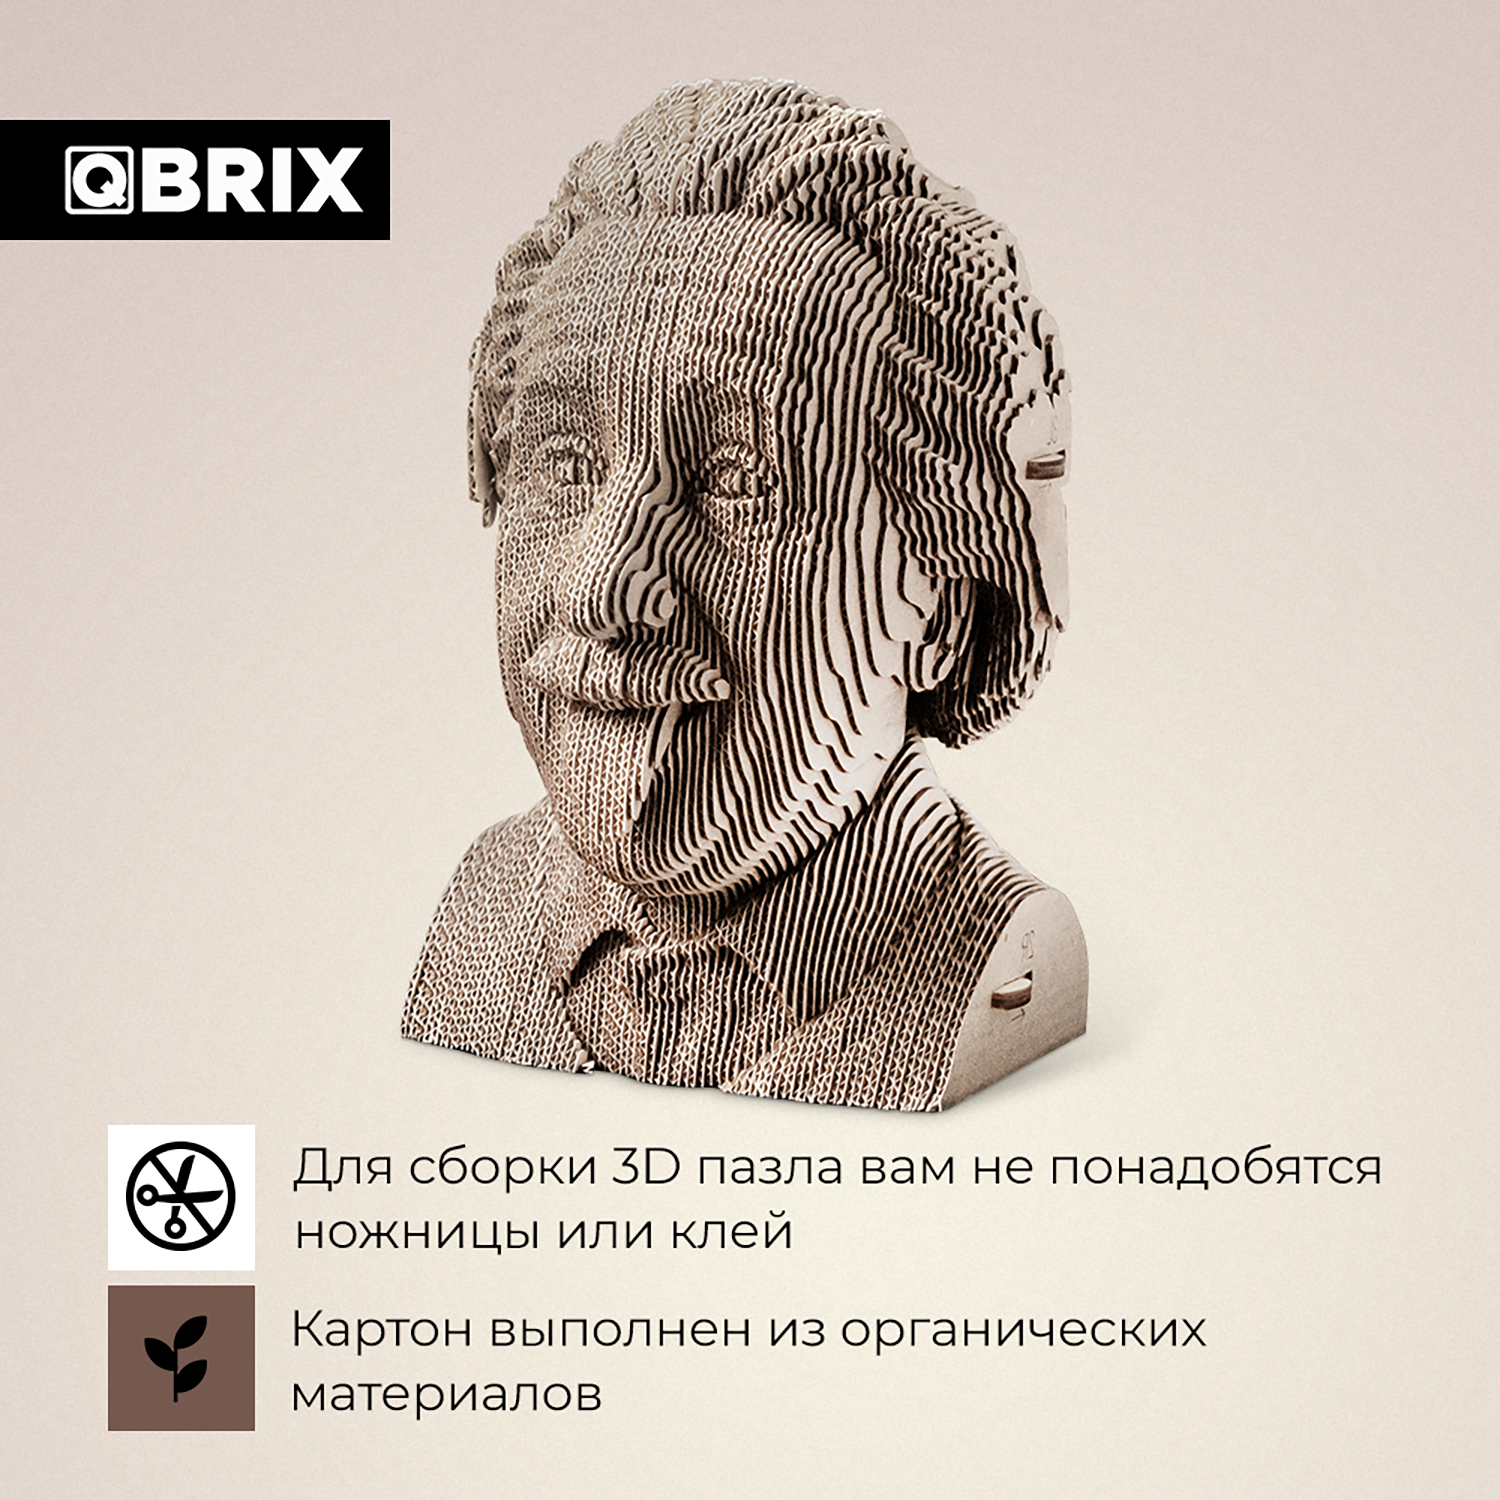 Конструктор QBRIX 3D картонный Эйнштейн 20002 20002 - фото 3